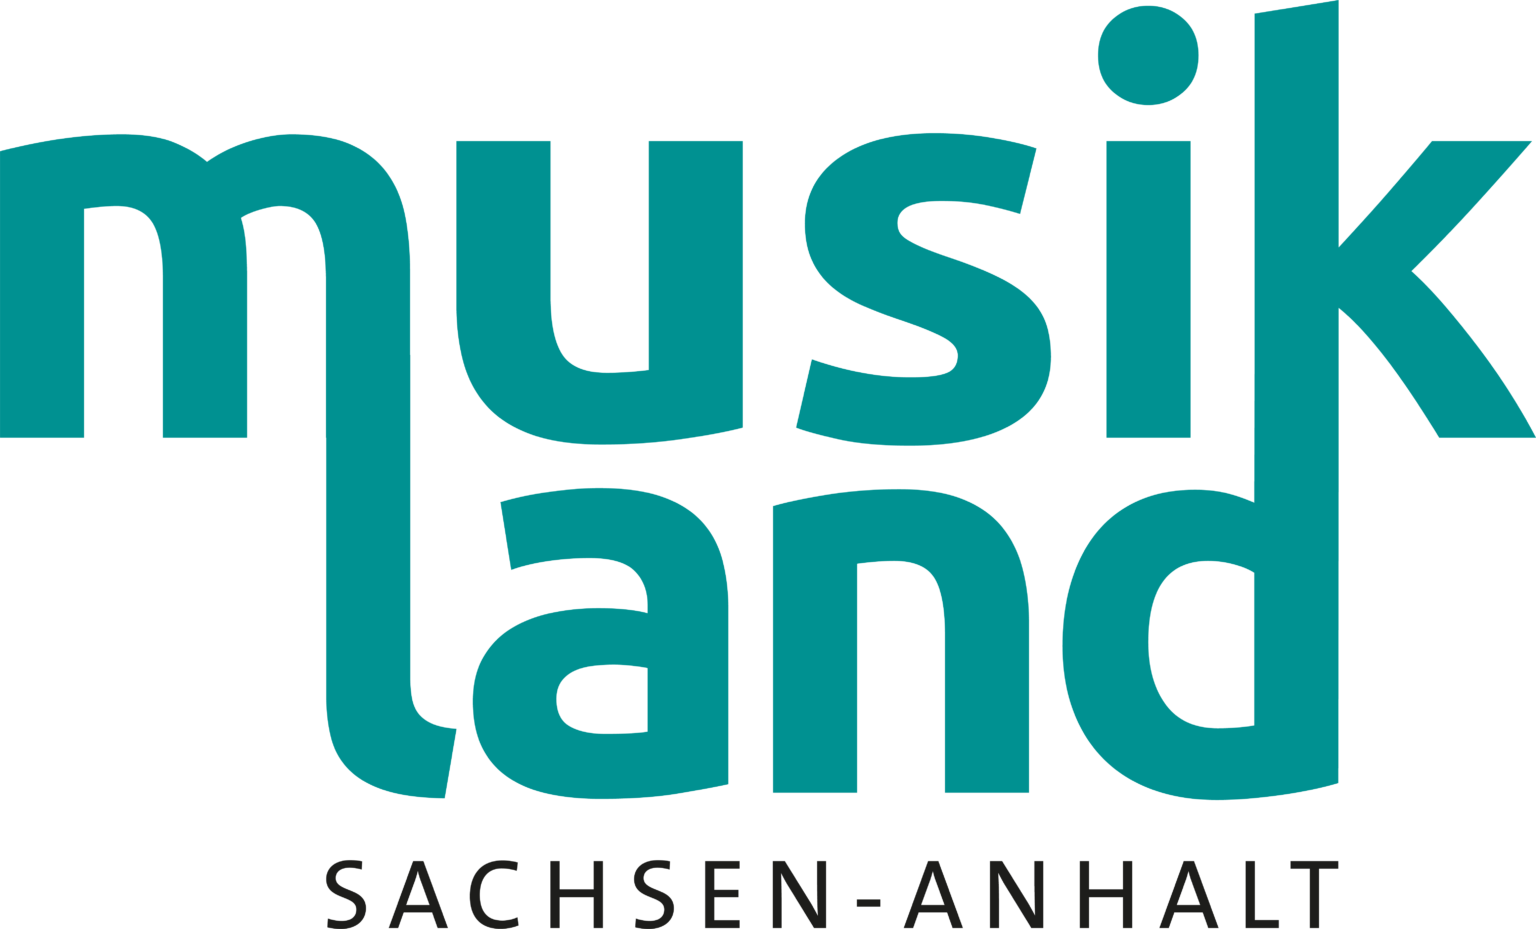 Company 1 Logo